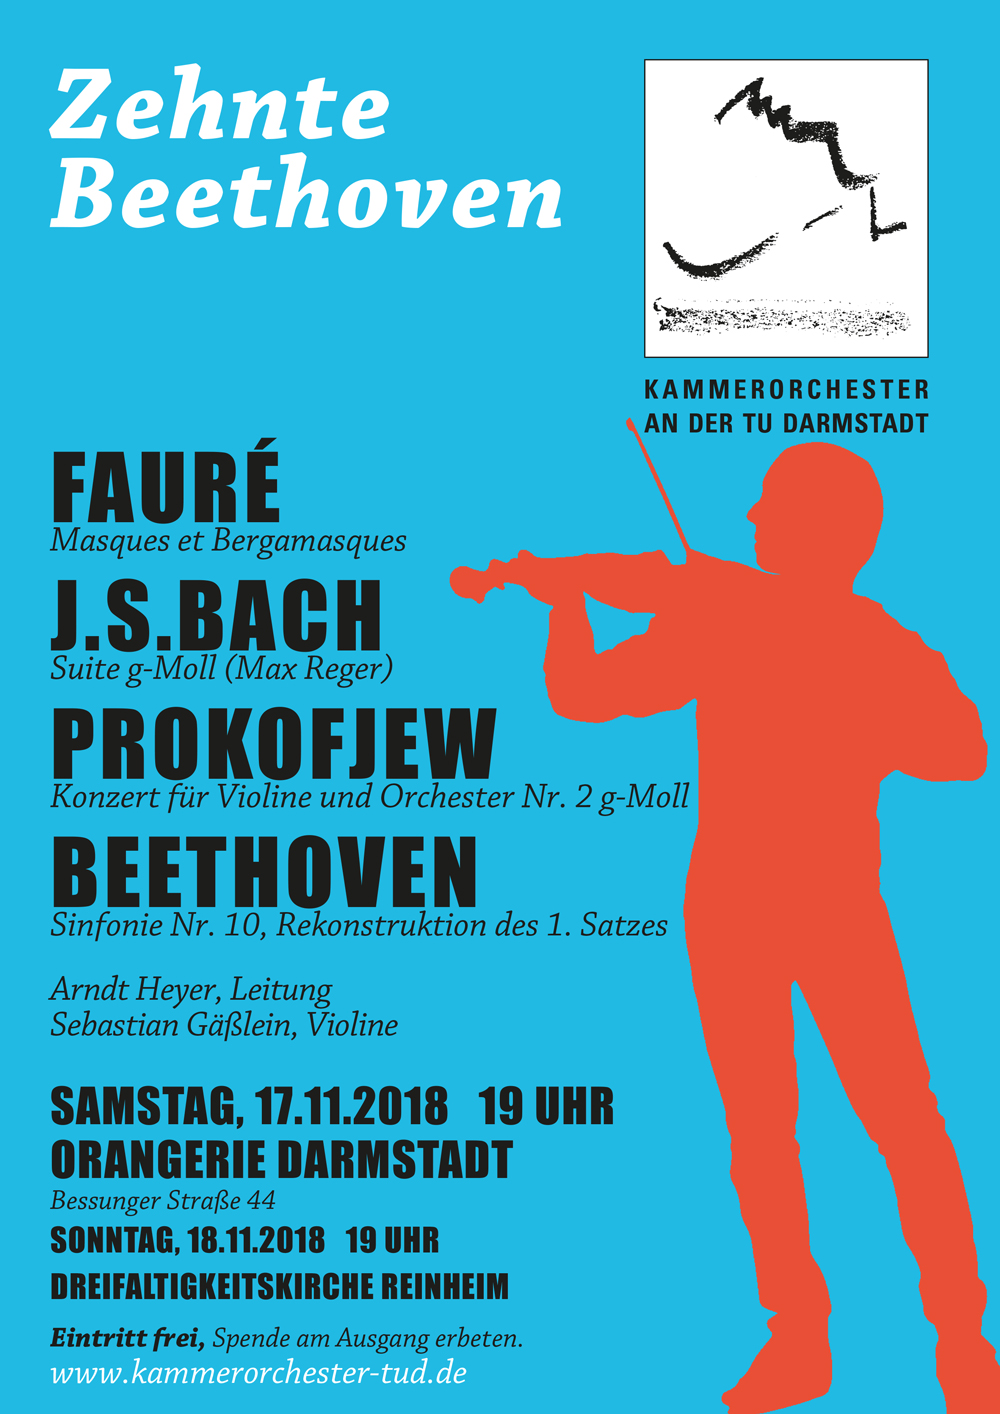 Zehnte Beethoven